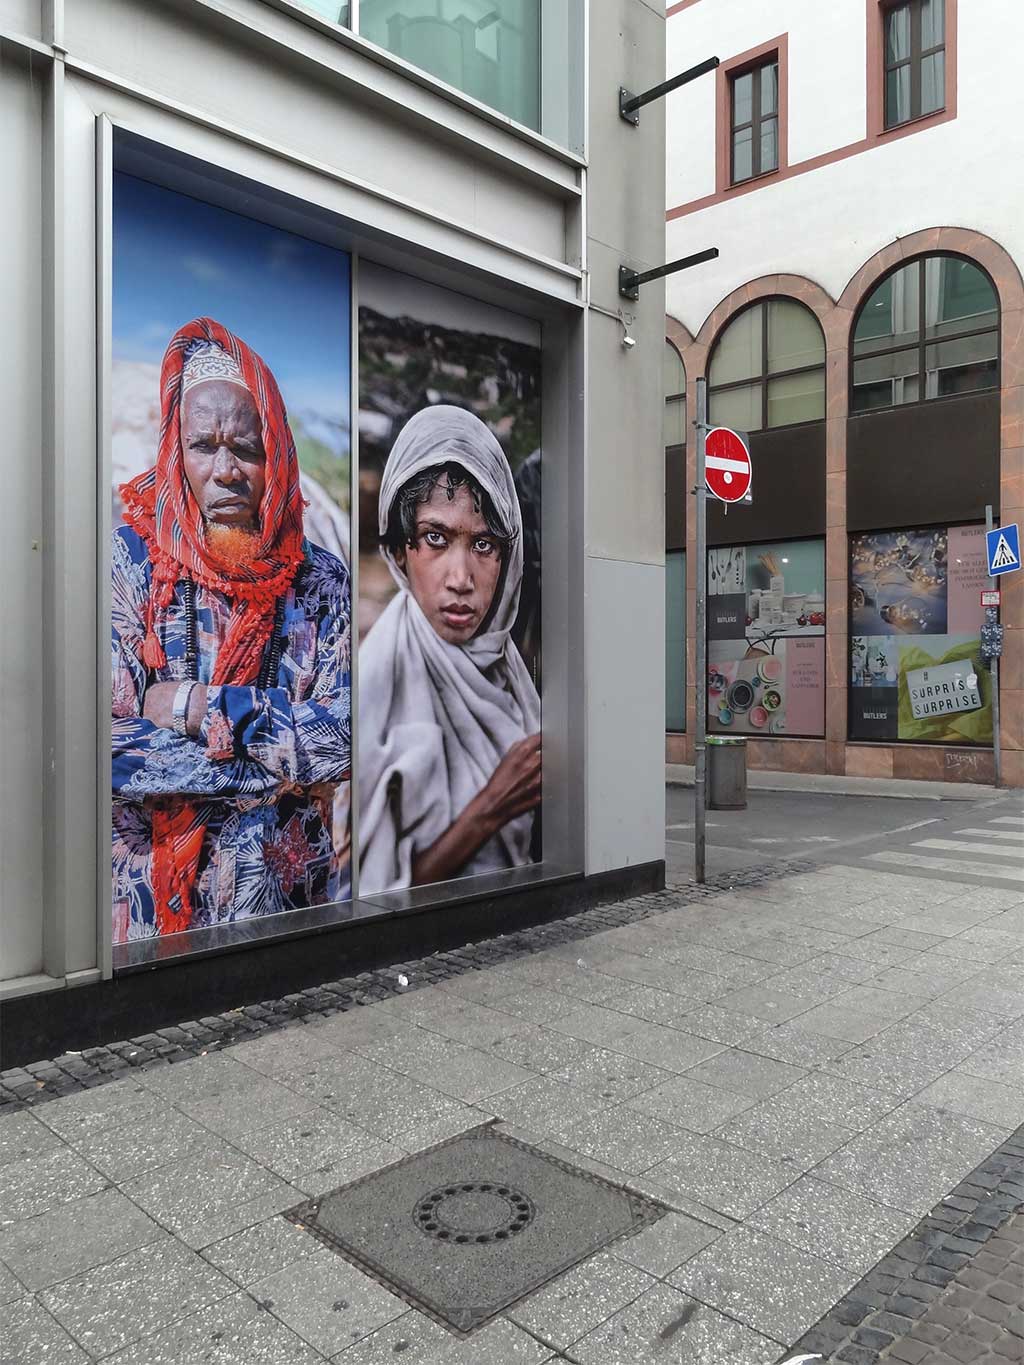 Solidarität ist grnezenlos - Werbekampagne von Ärzte ohne Grenzen auf der Zeil in Frankfurt